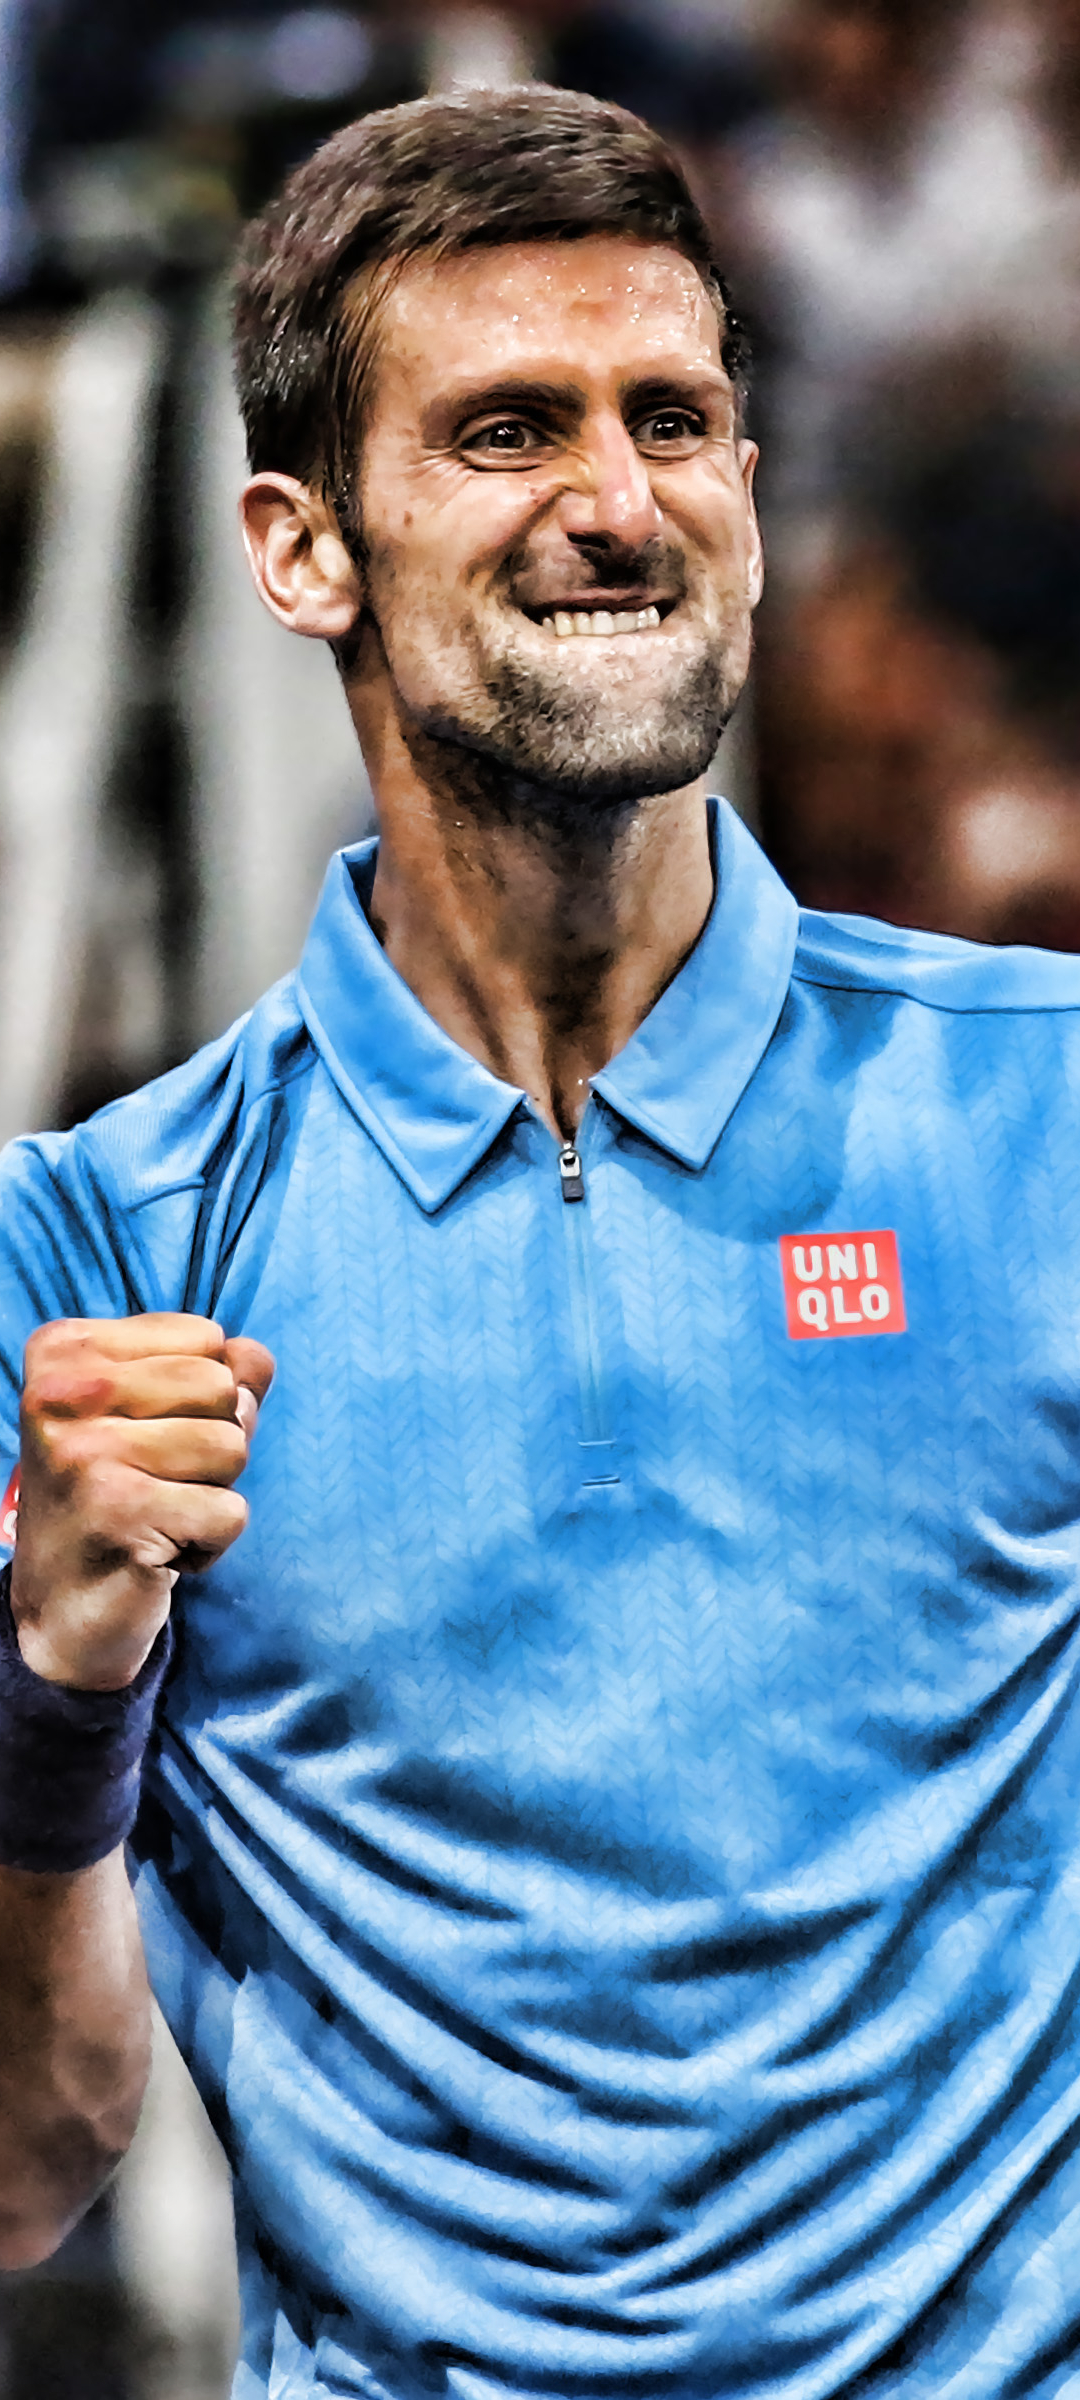 Novak Djokovic Phone Wallpaper